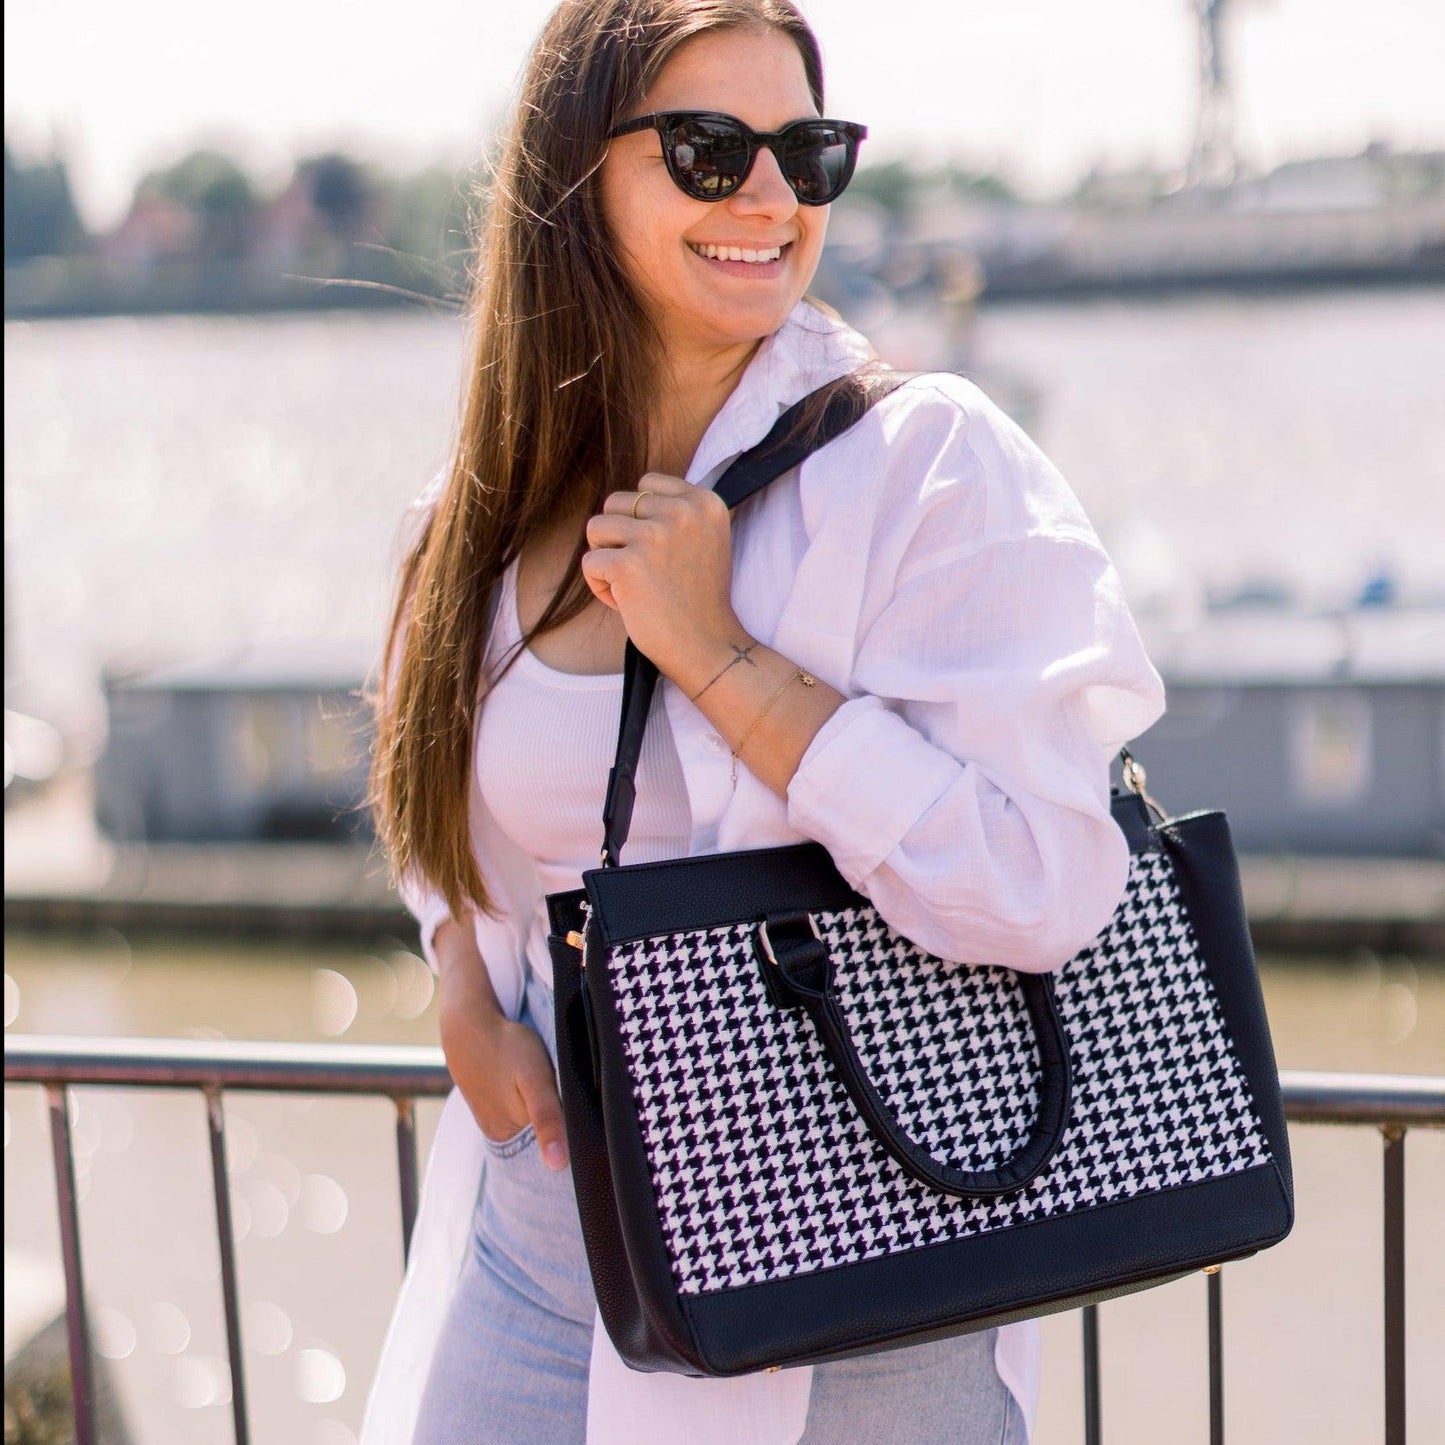 Ein strahlendes Model mit Sonnenbrille trägt die Business Bag in black and white zu einer weißen Bluse mit einer hellblauen Jeans